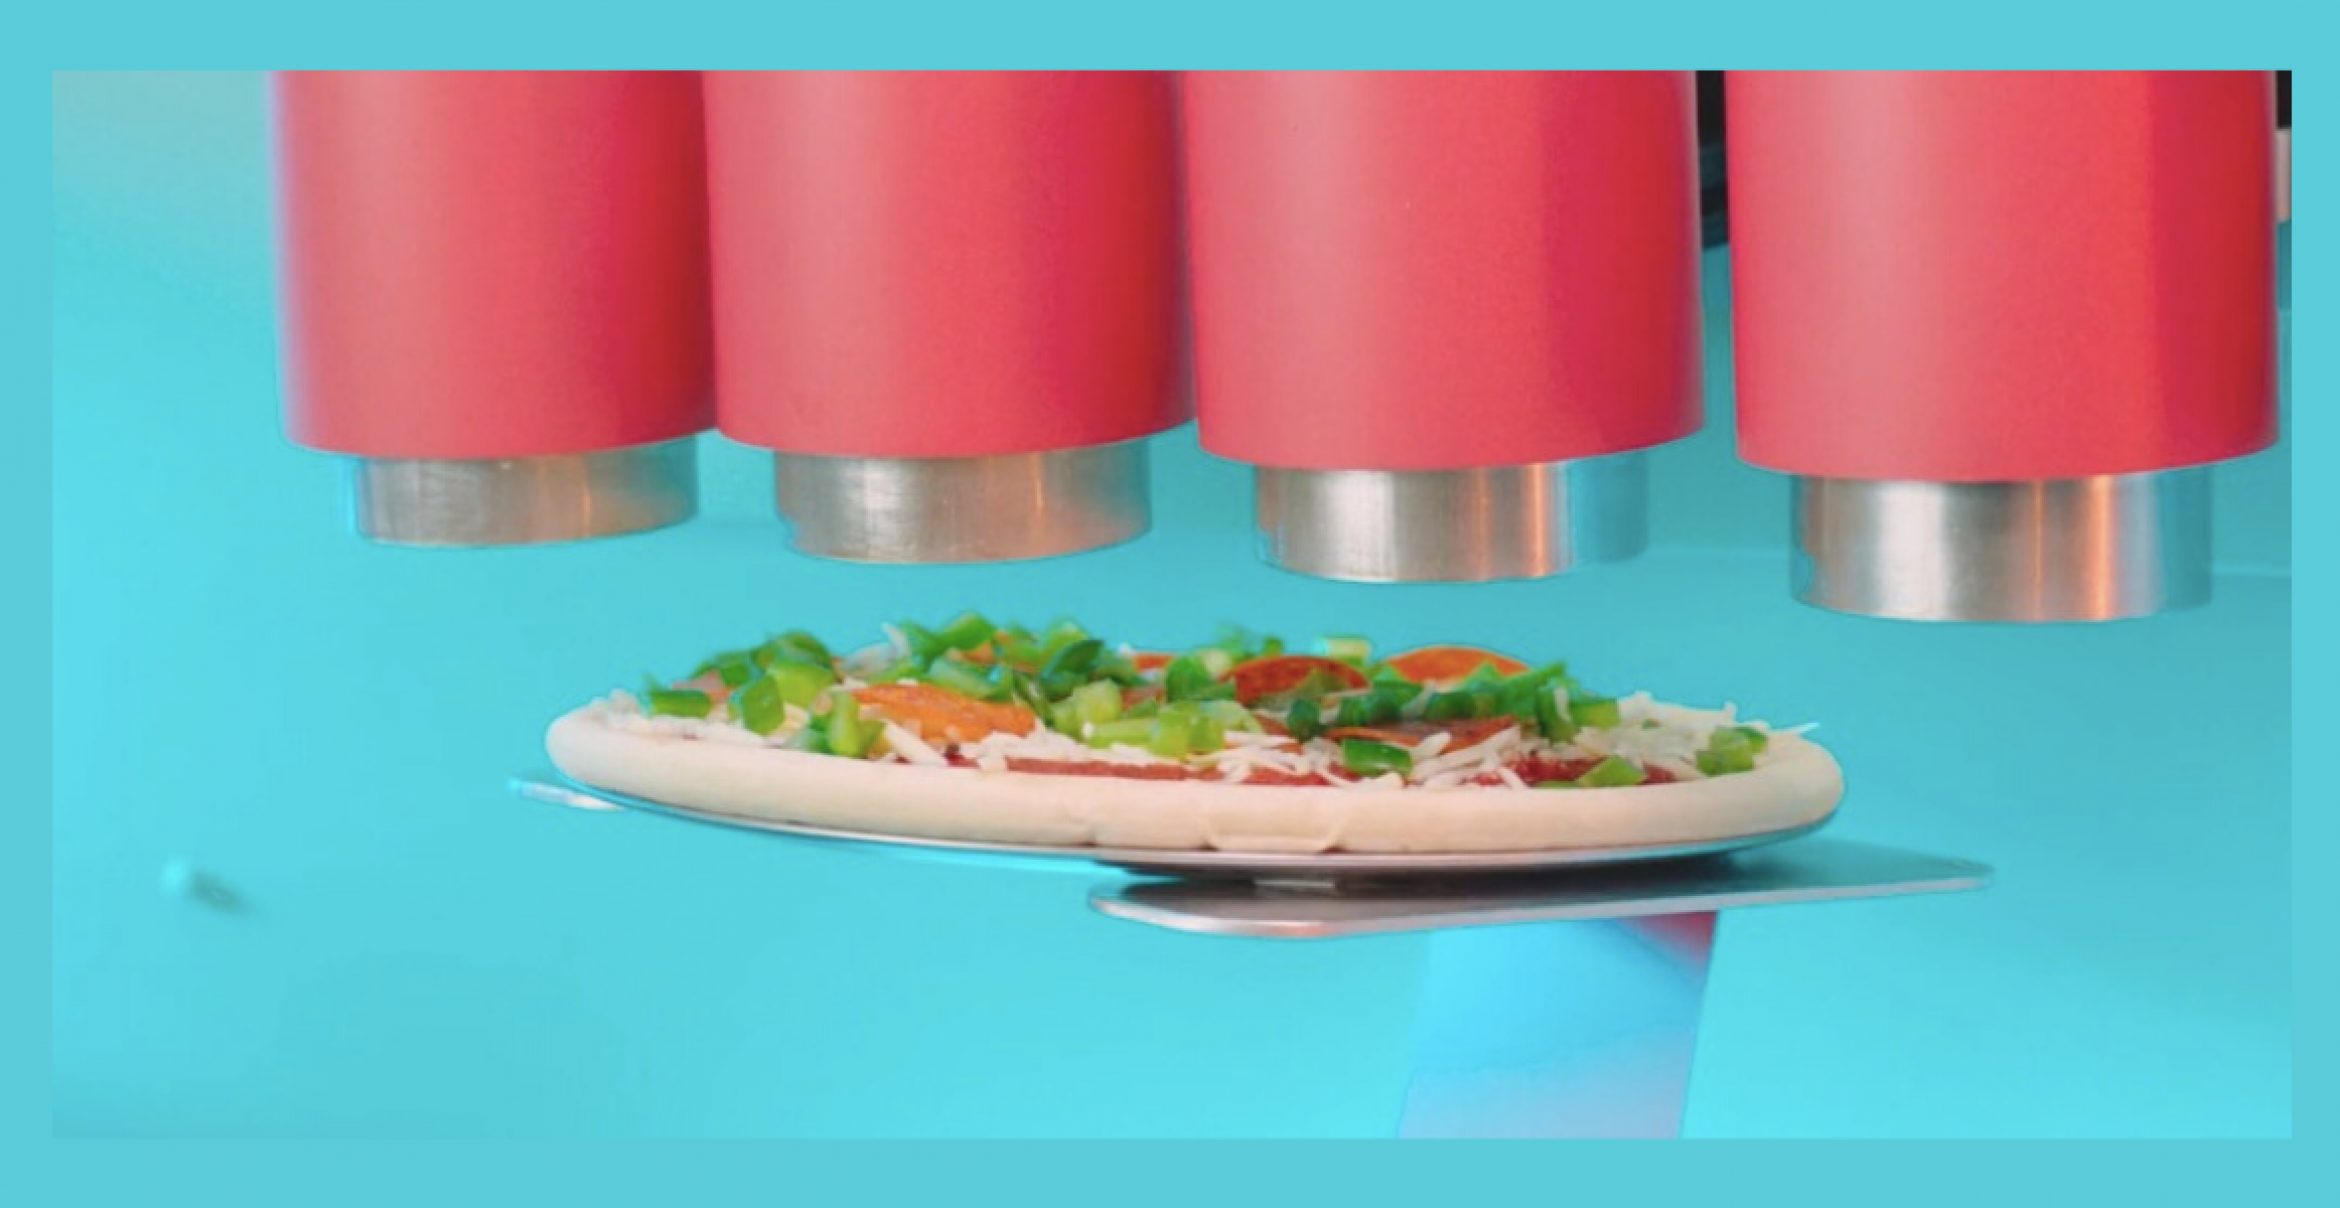 Piestro: Pizza aus dem Automaten? Gründer entwickeln ersten Prototypen